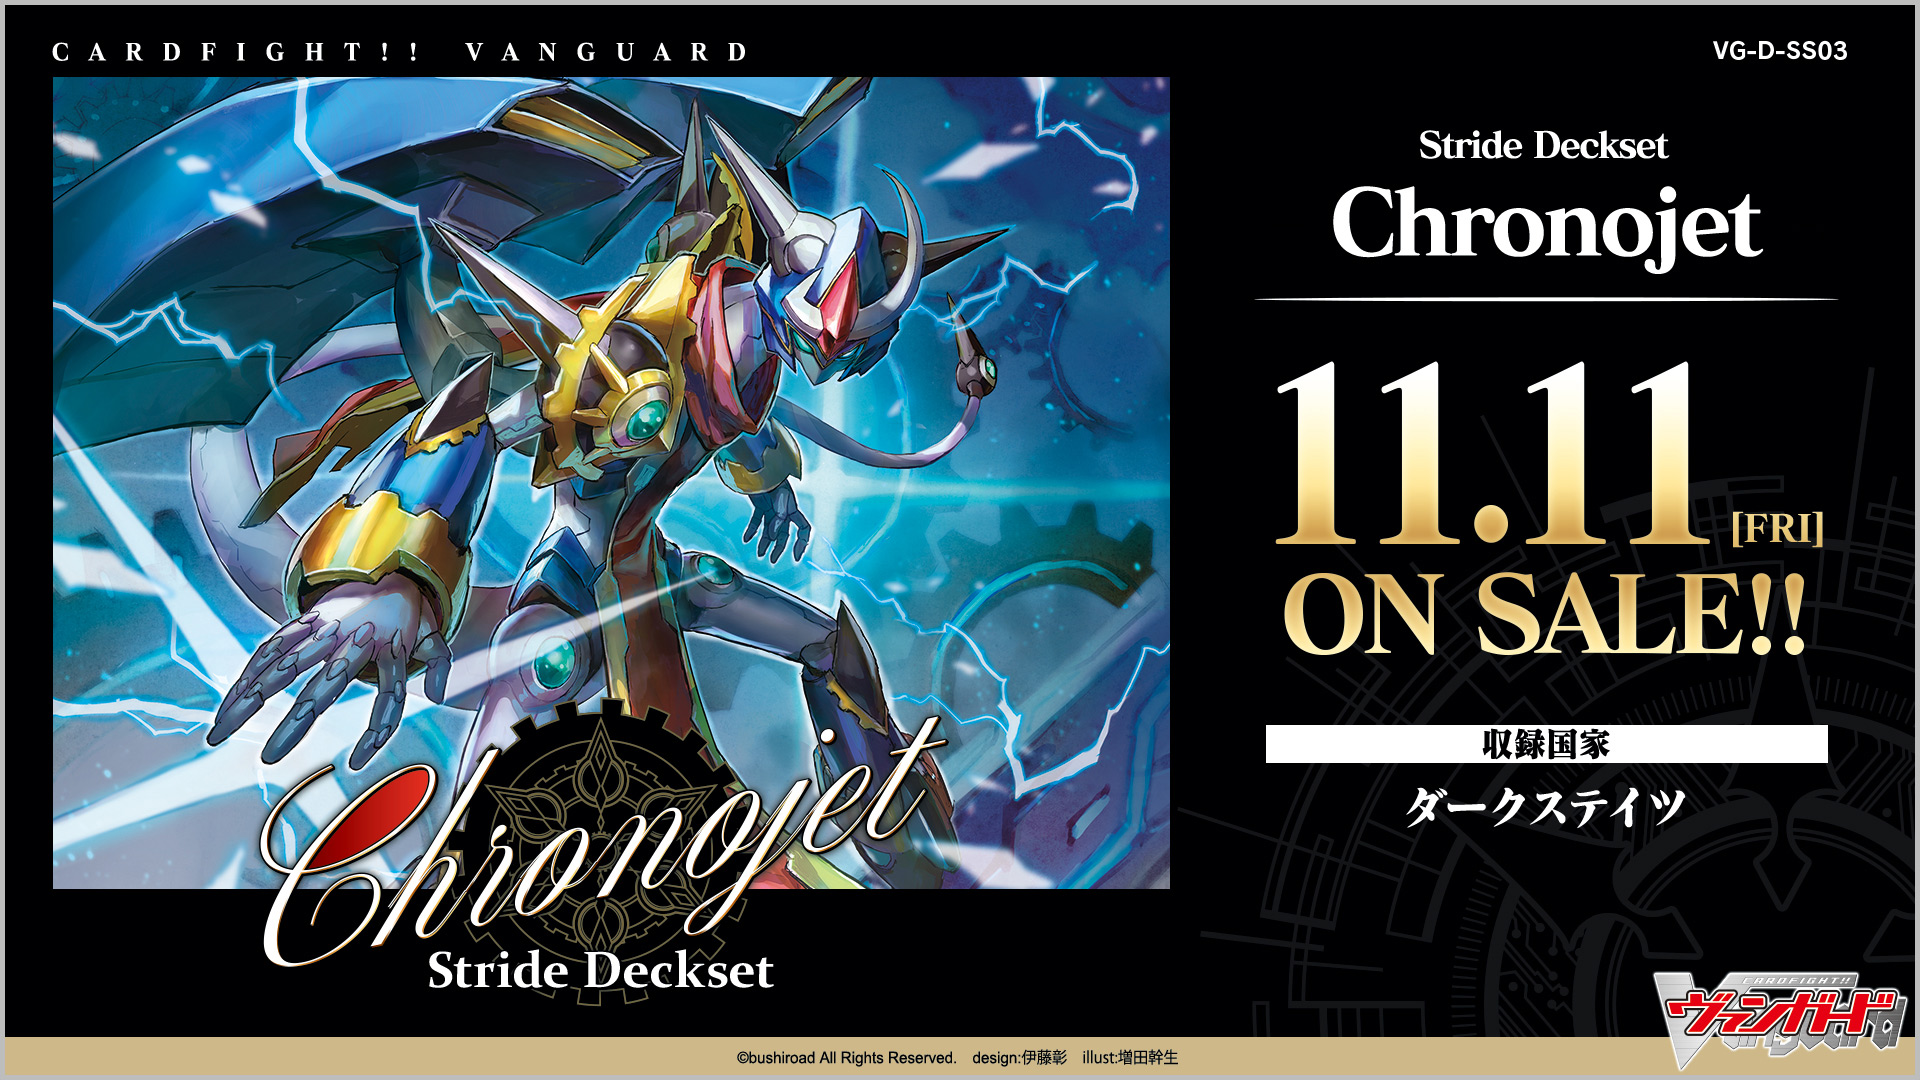 スペシャルシリーズ第3弾「Stride Deckset Chronojet(ストライド